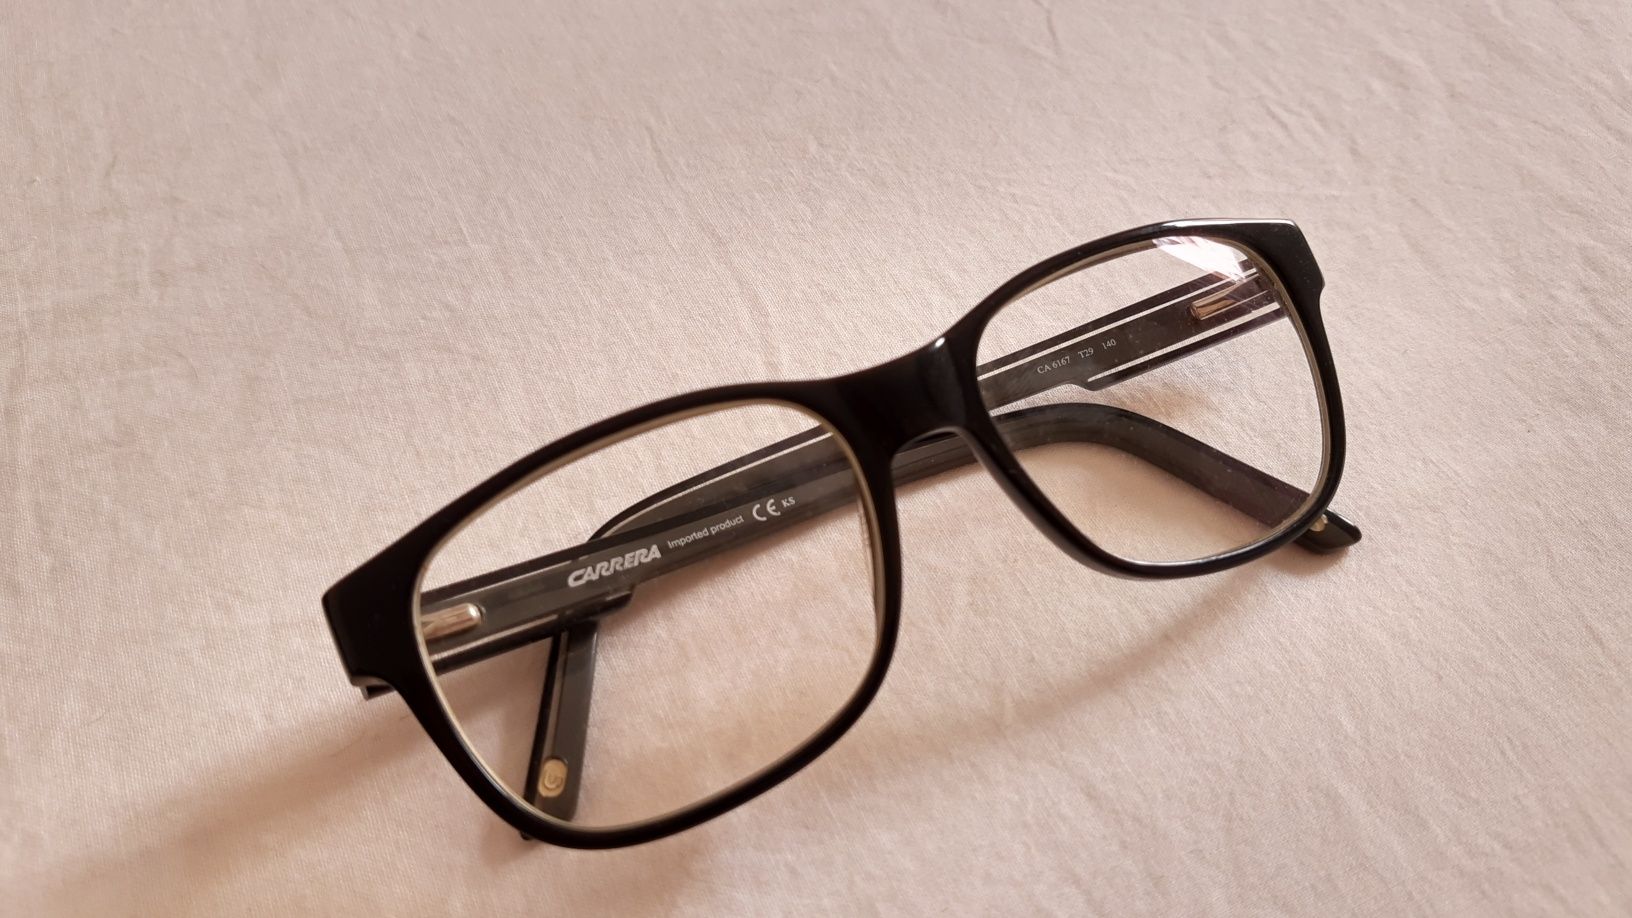 Óculos Carrera originais preto e cinza